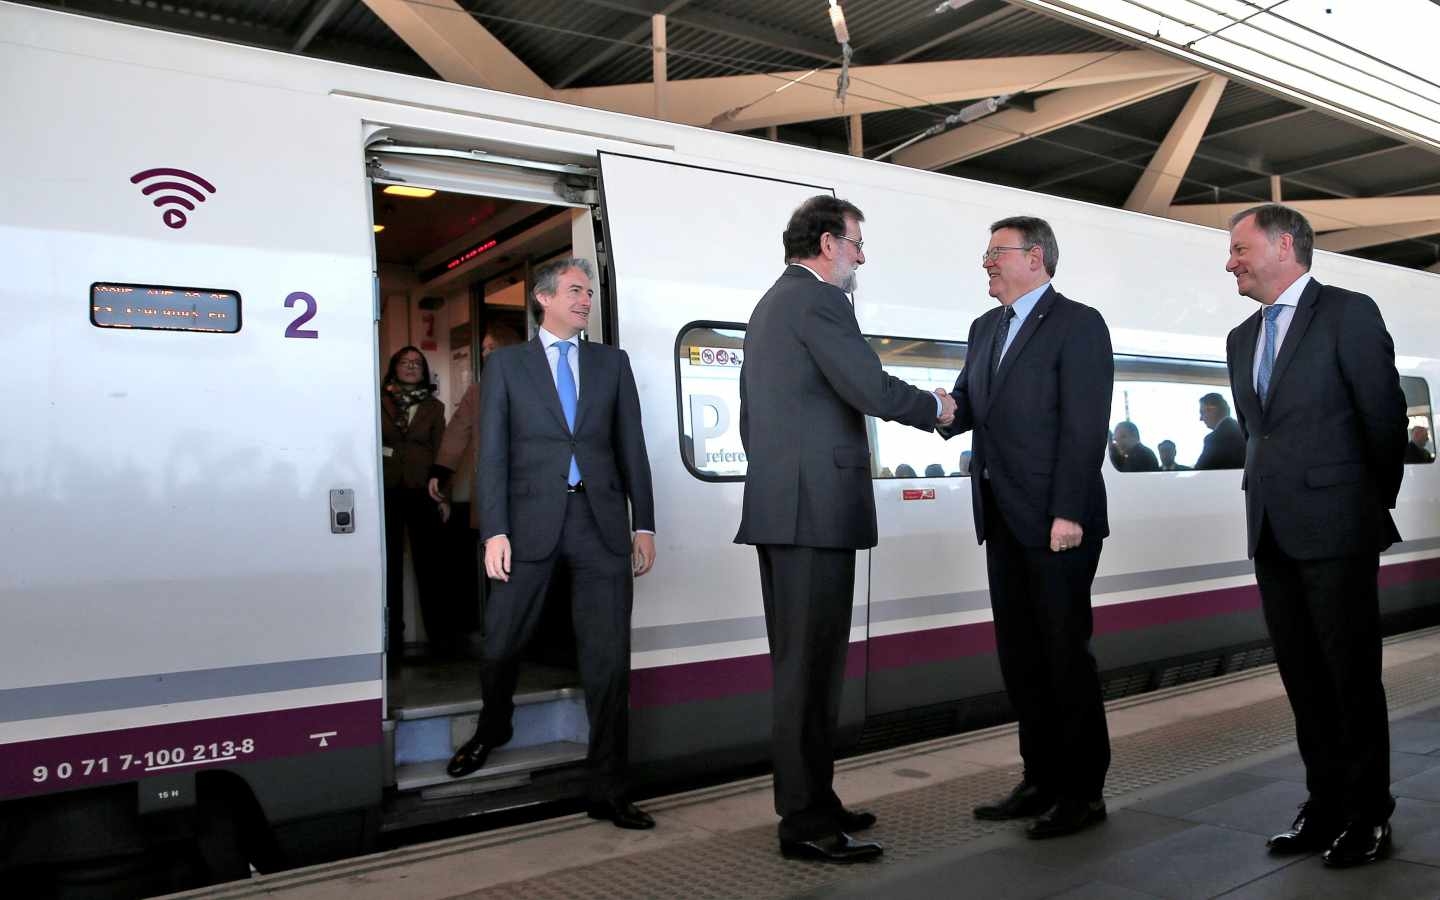 Rajoy saluda a Puig en la estación Joaquín Sorolla de Valencia.